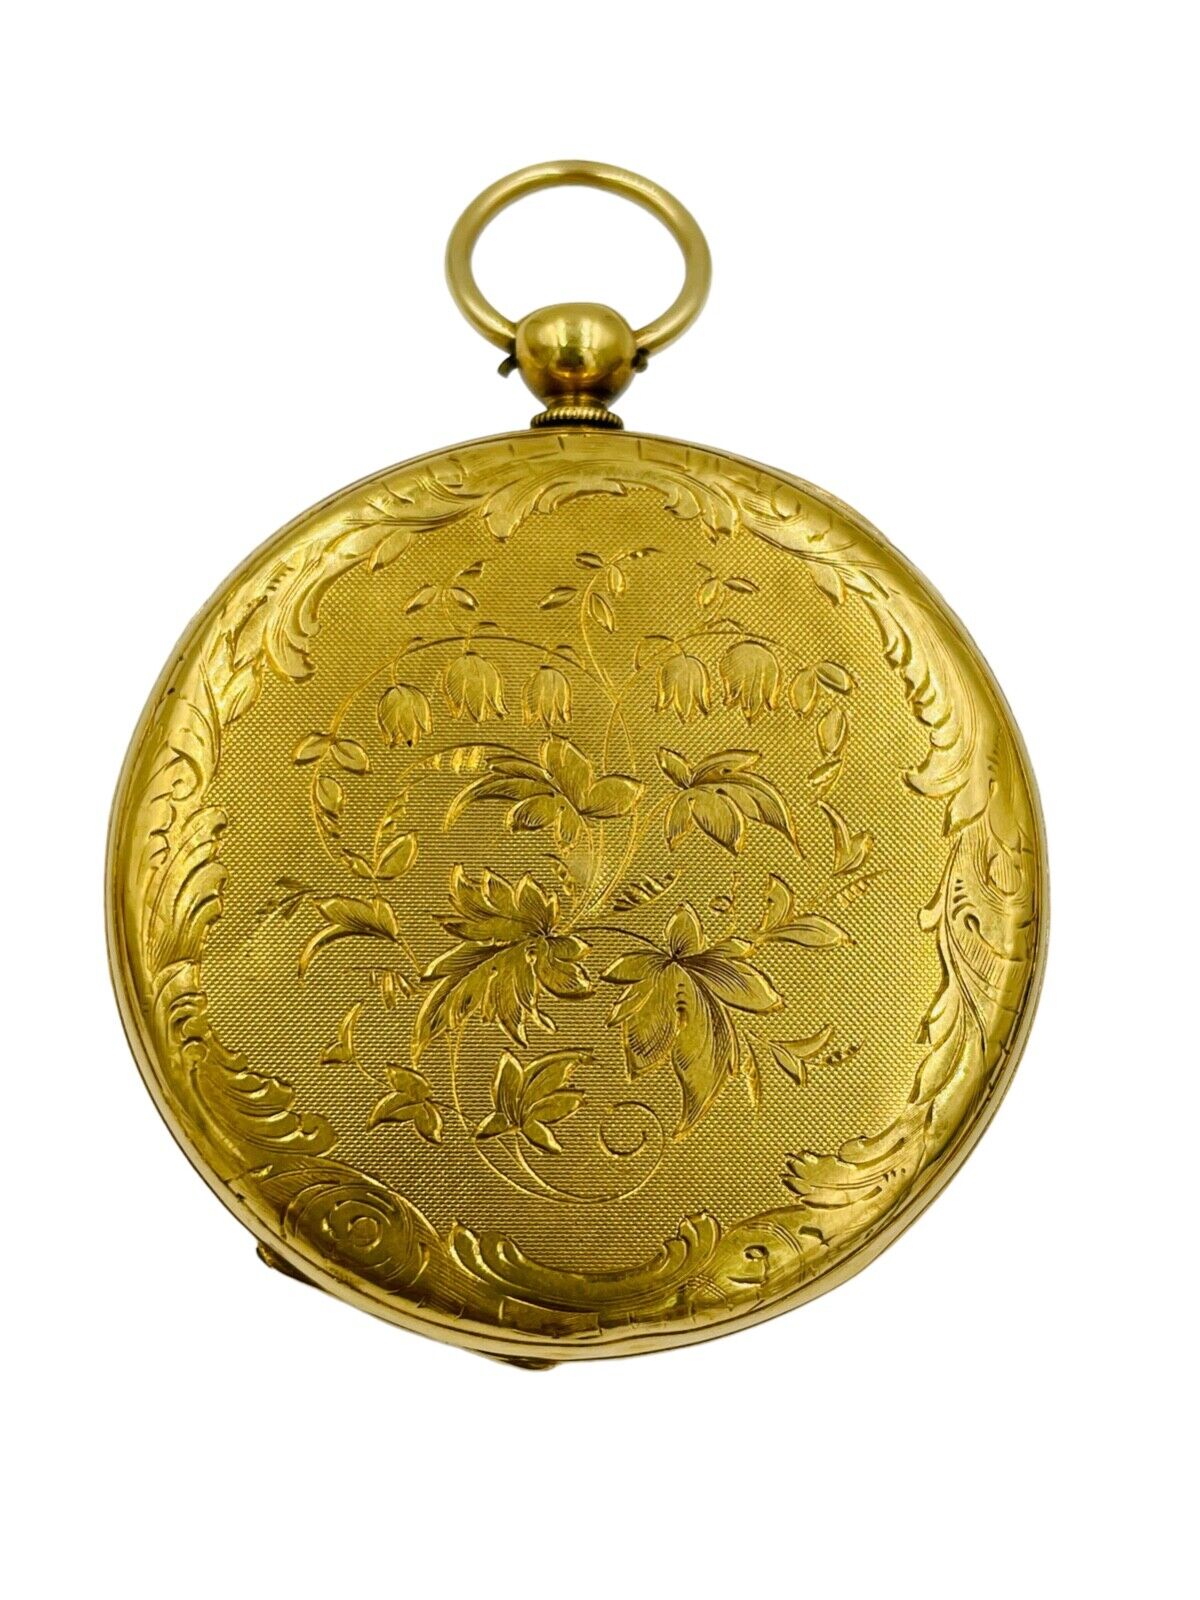 Antique 18k Gold Pocket Watch by John Harrison Liverpool Open face Key wind